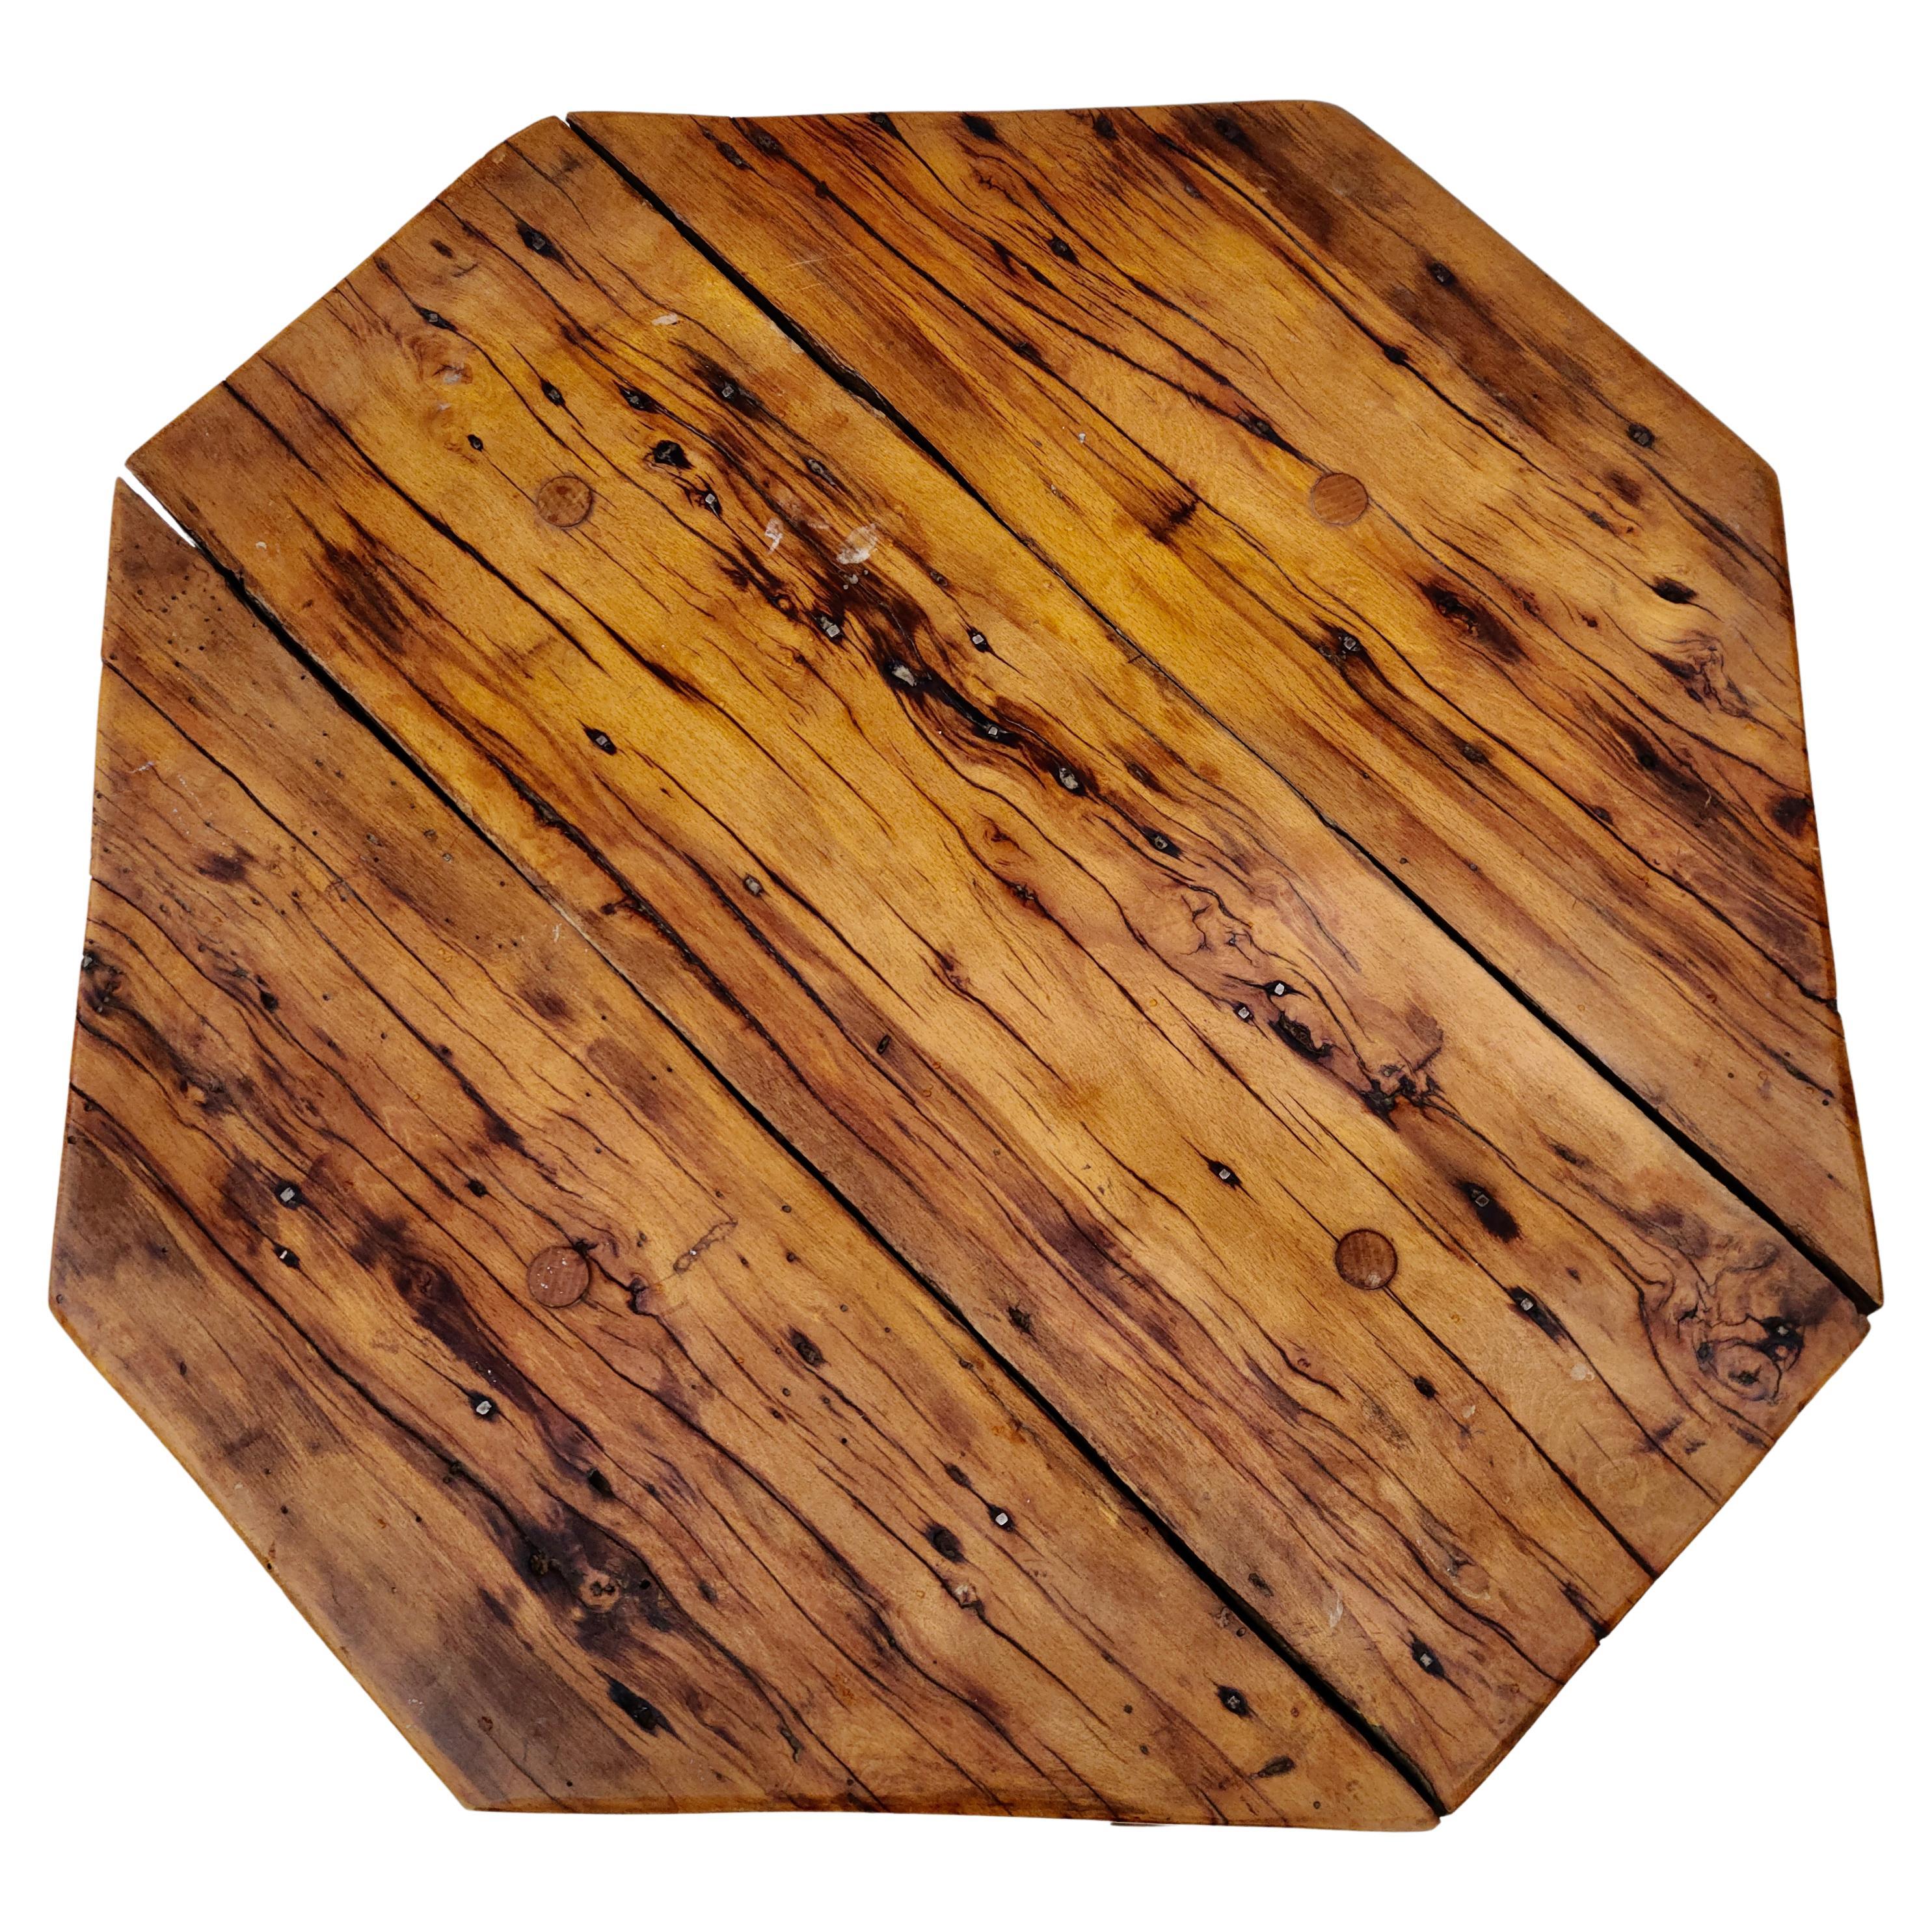 applewood table